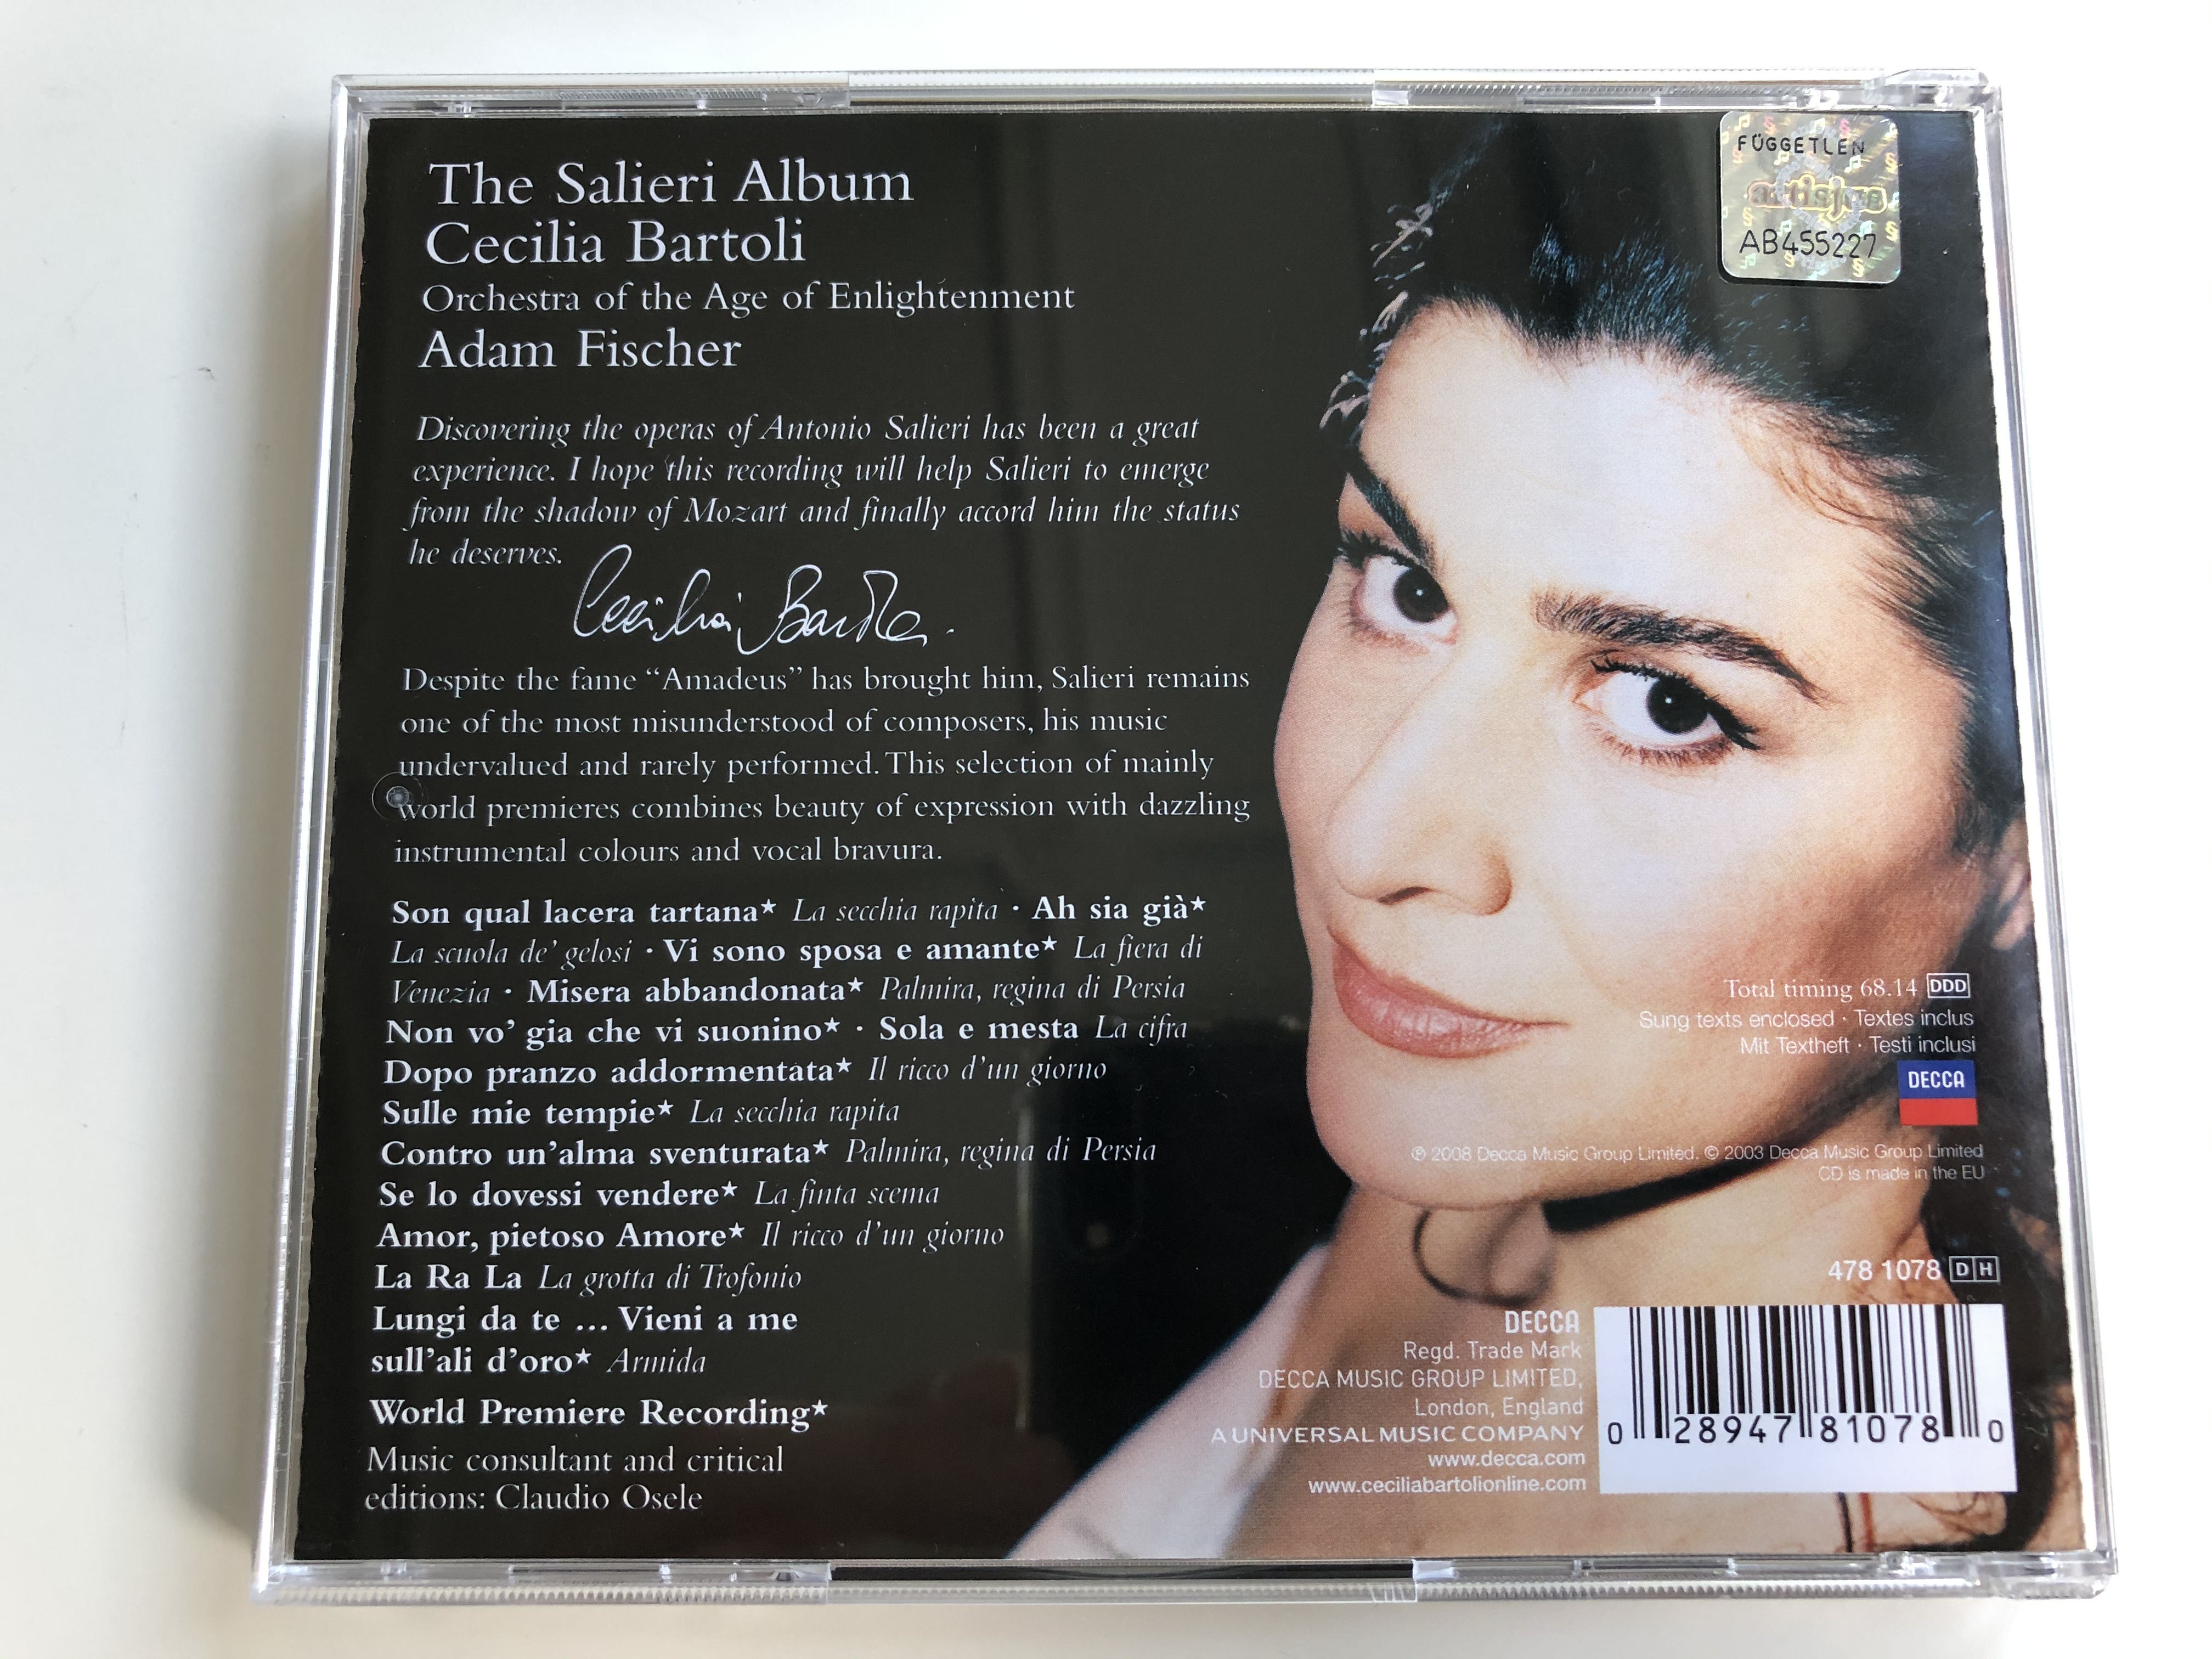 cecilia-bartoli-the-salieri-album-decca-audio-cd-2008-478-1078-3-.jpg